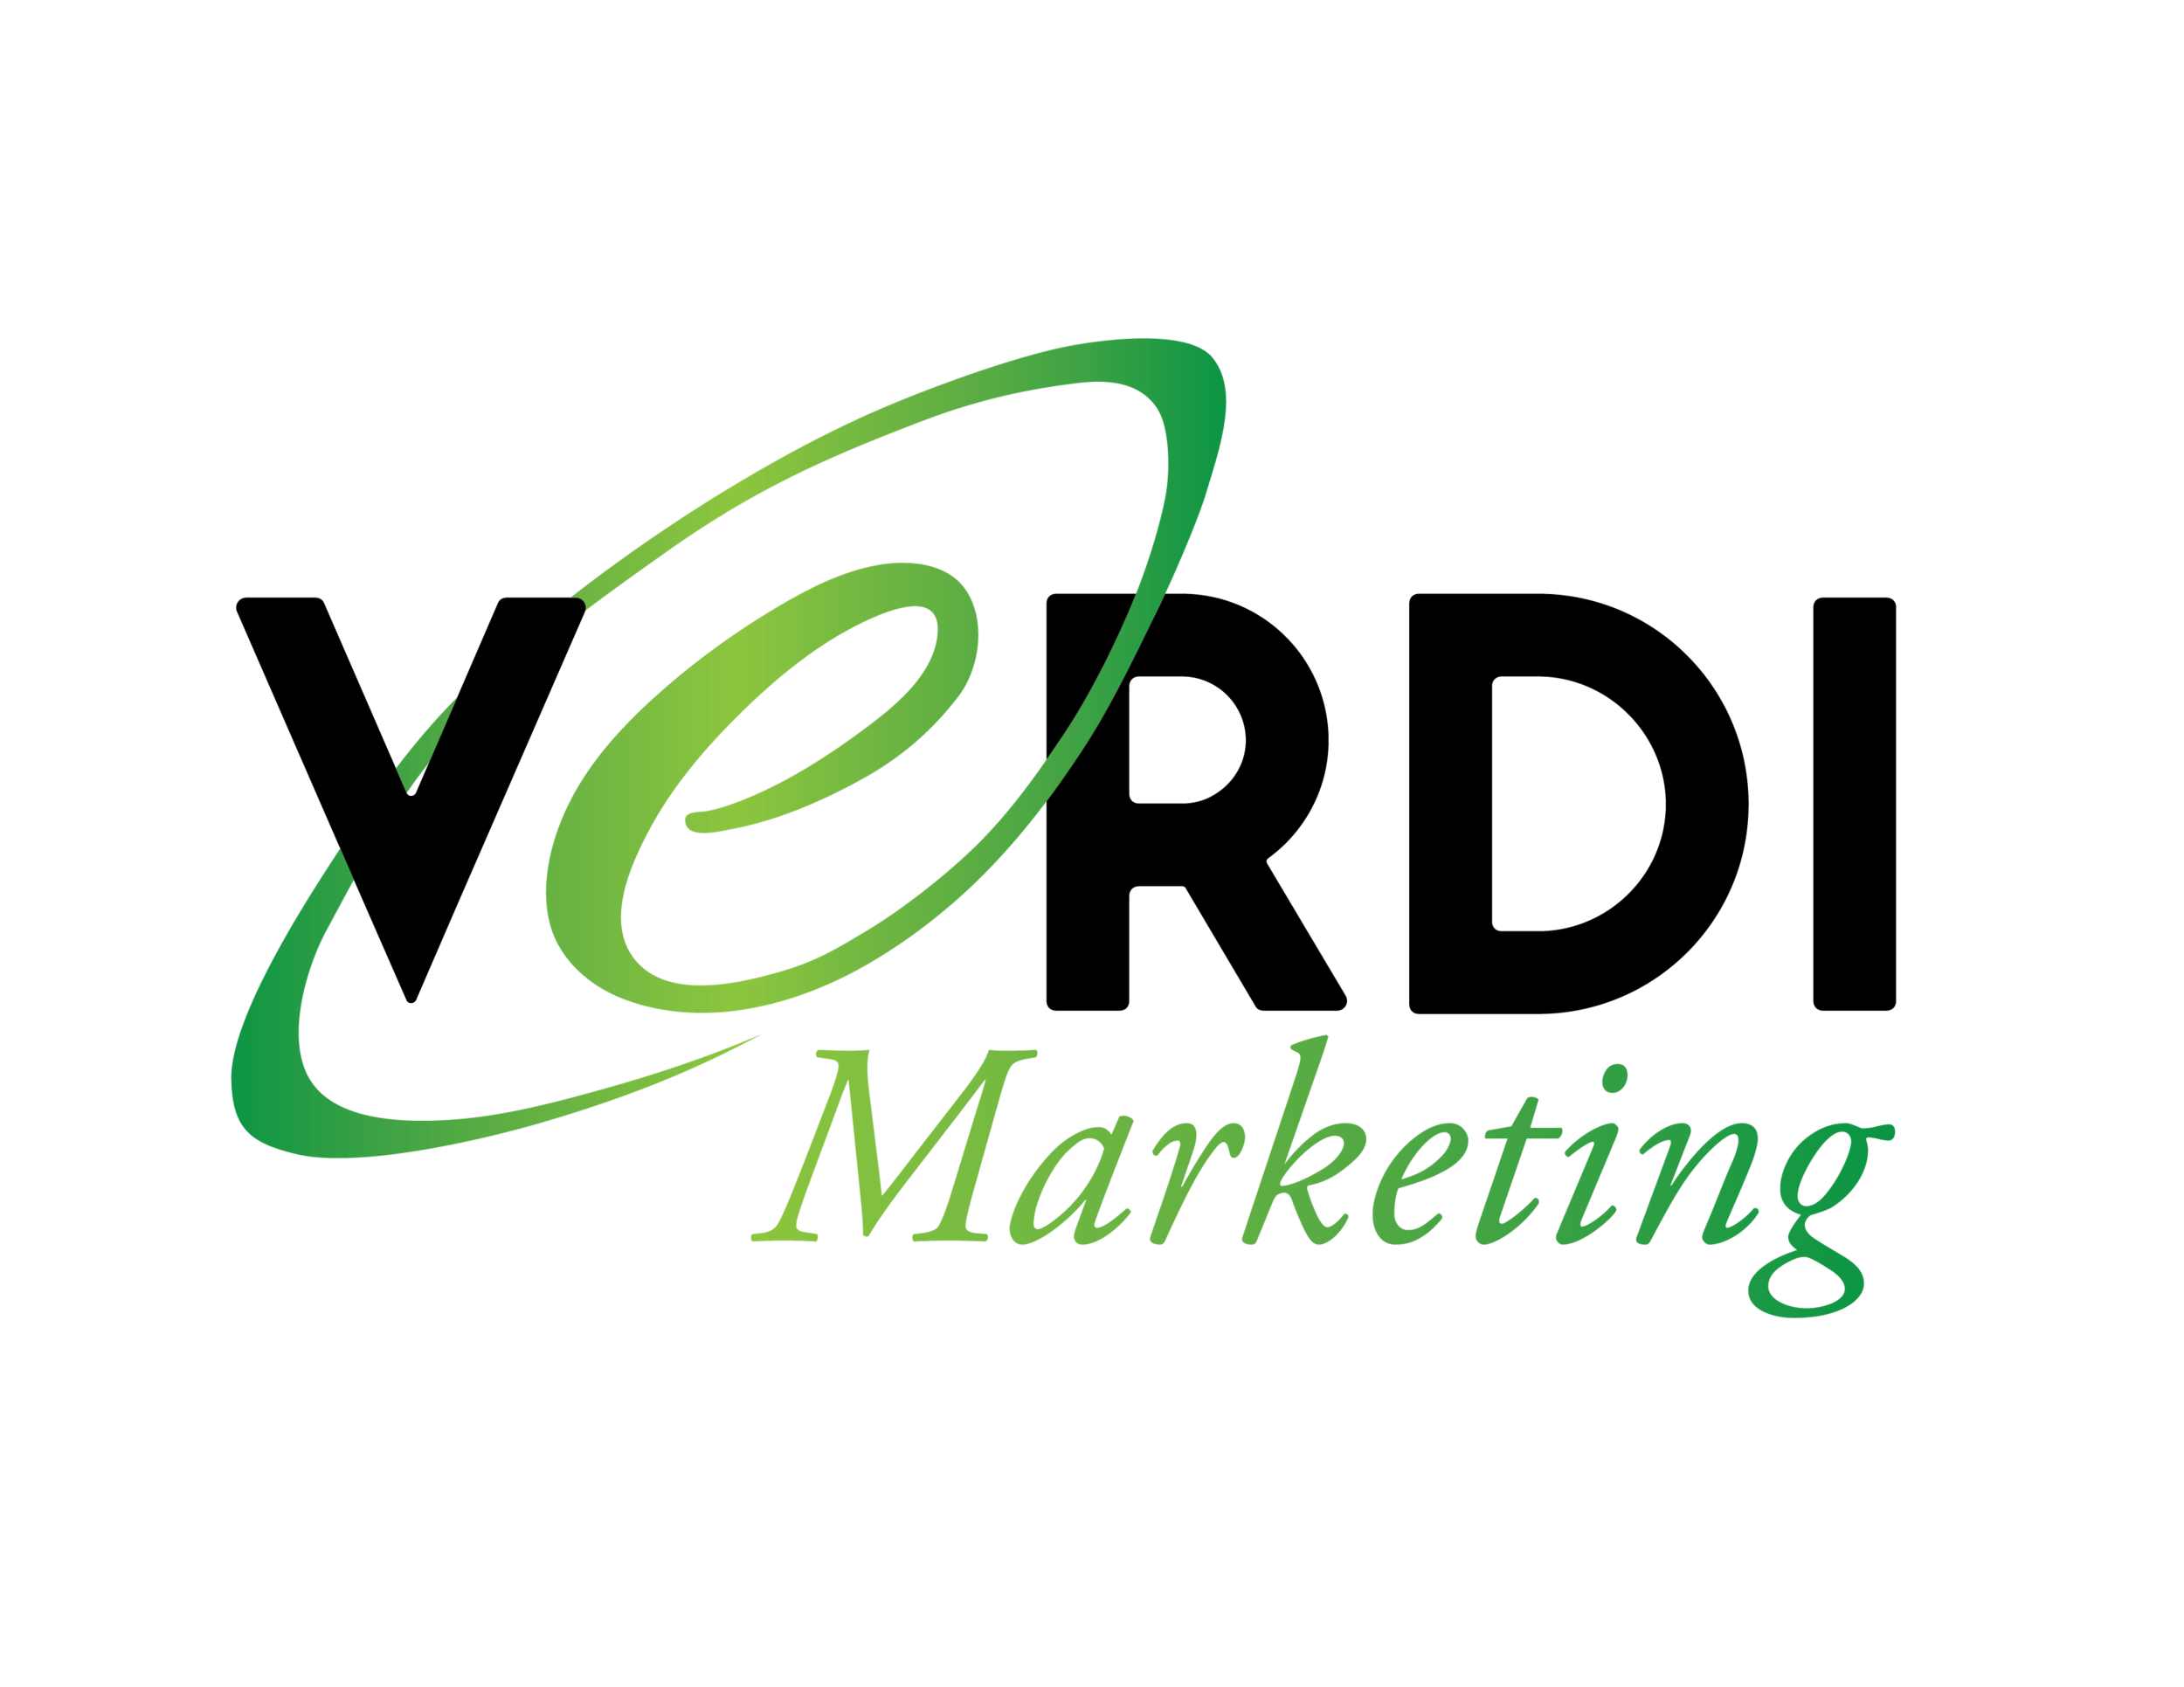 Verdi Marketing Logo